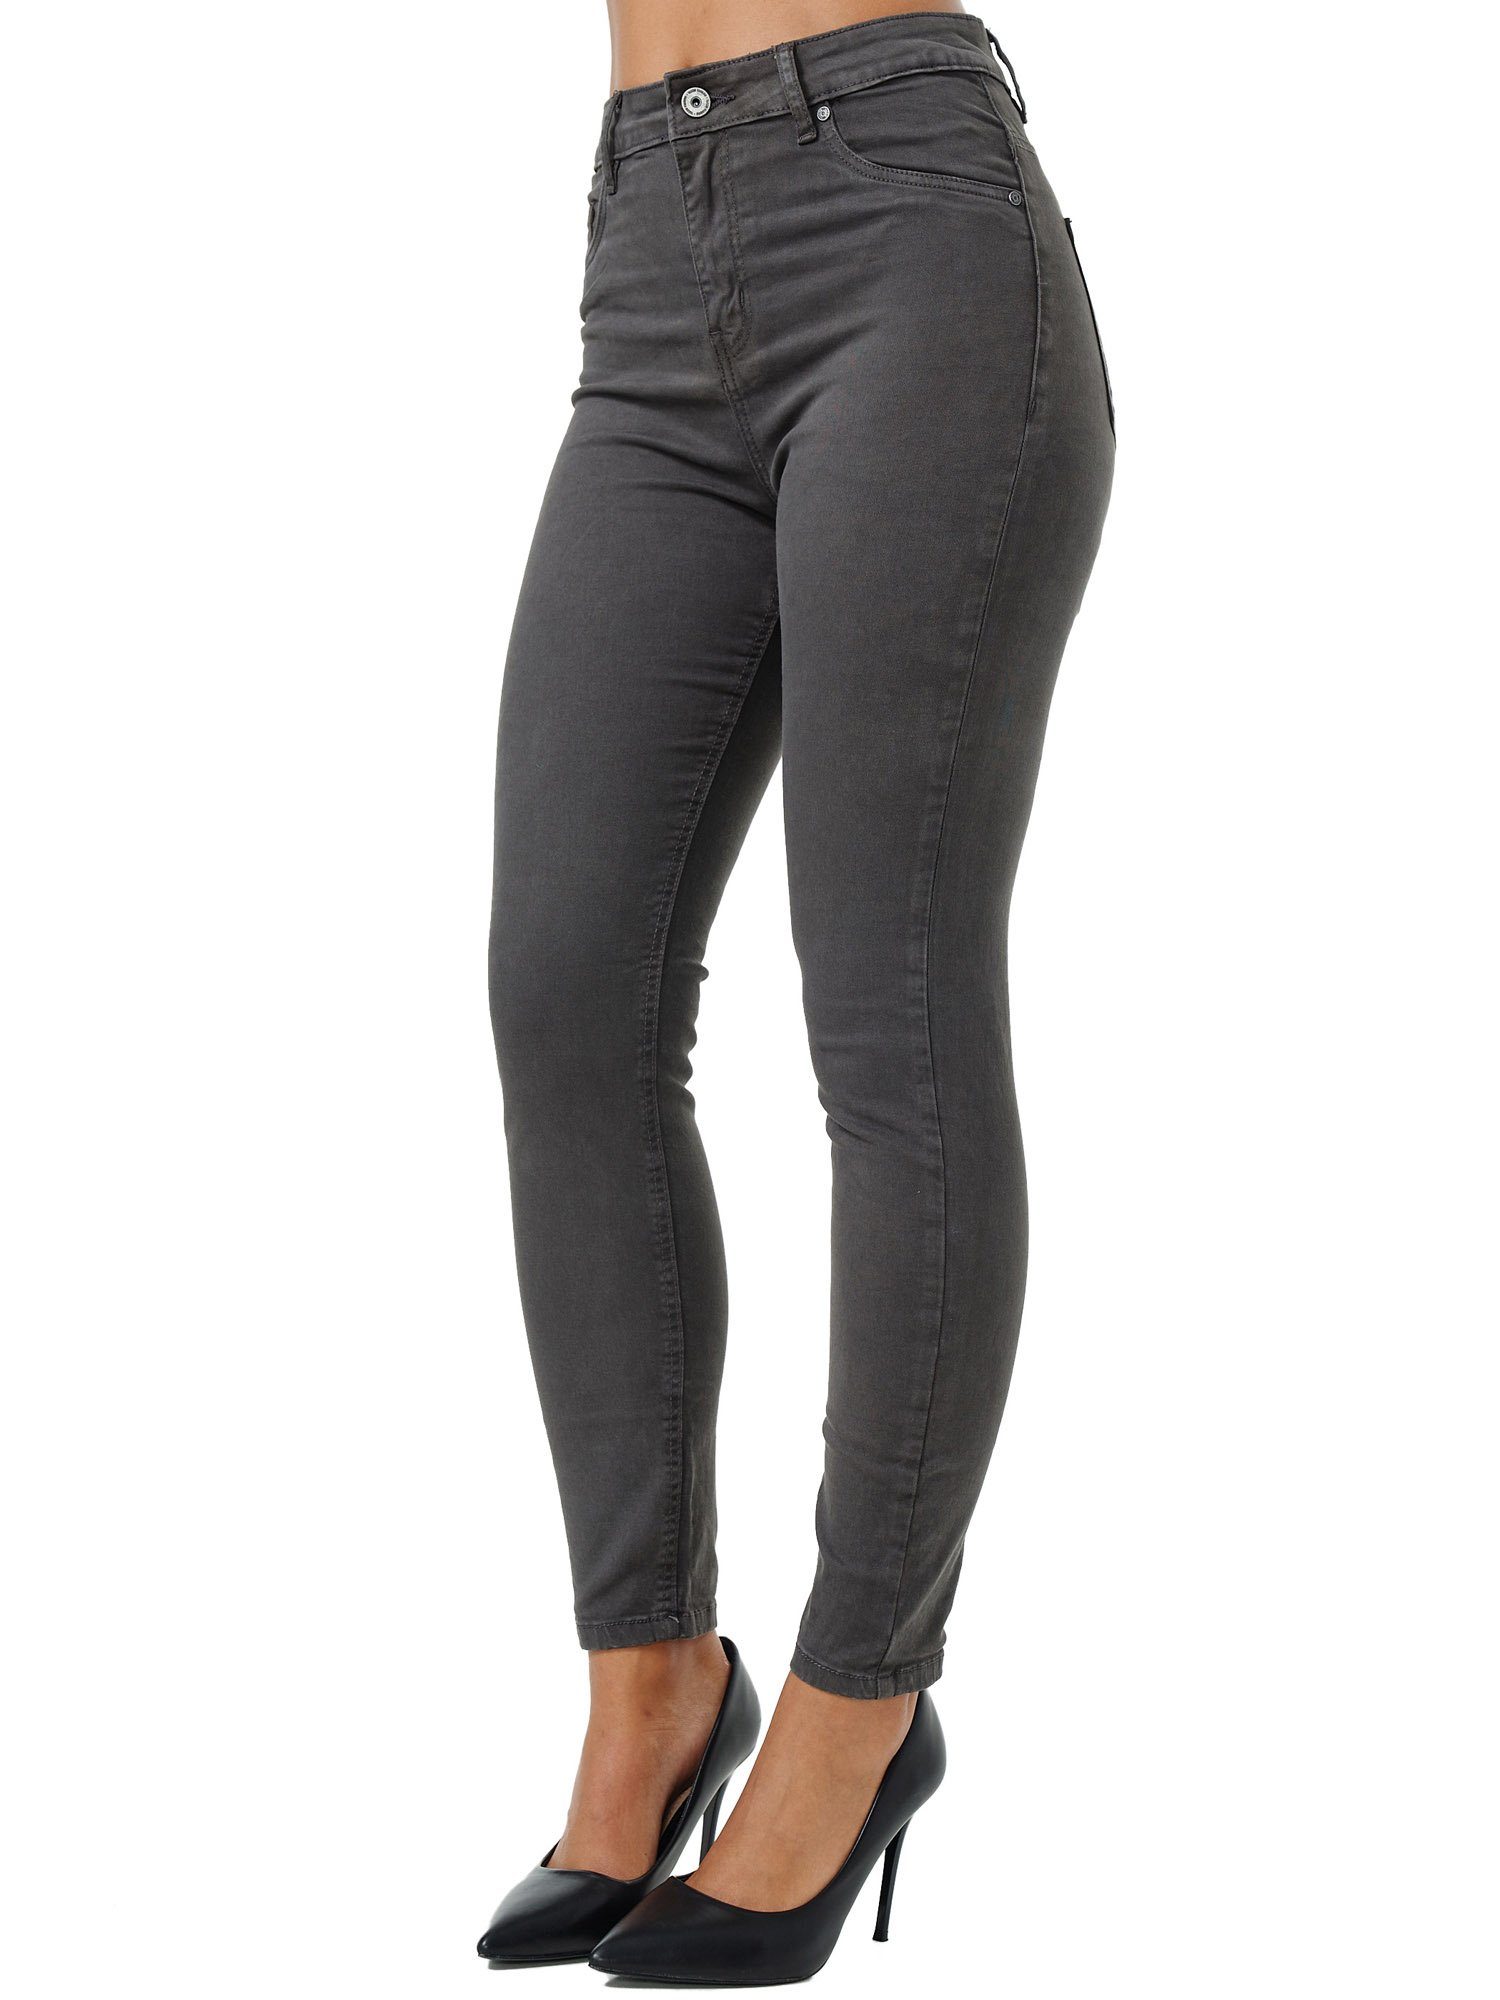 Tazzio Skinny-fit-Jeans F103 Damen High Rise anthrazit Jeanshose